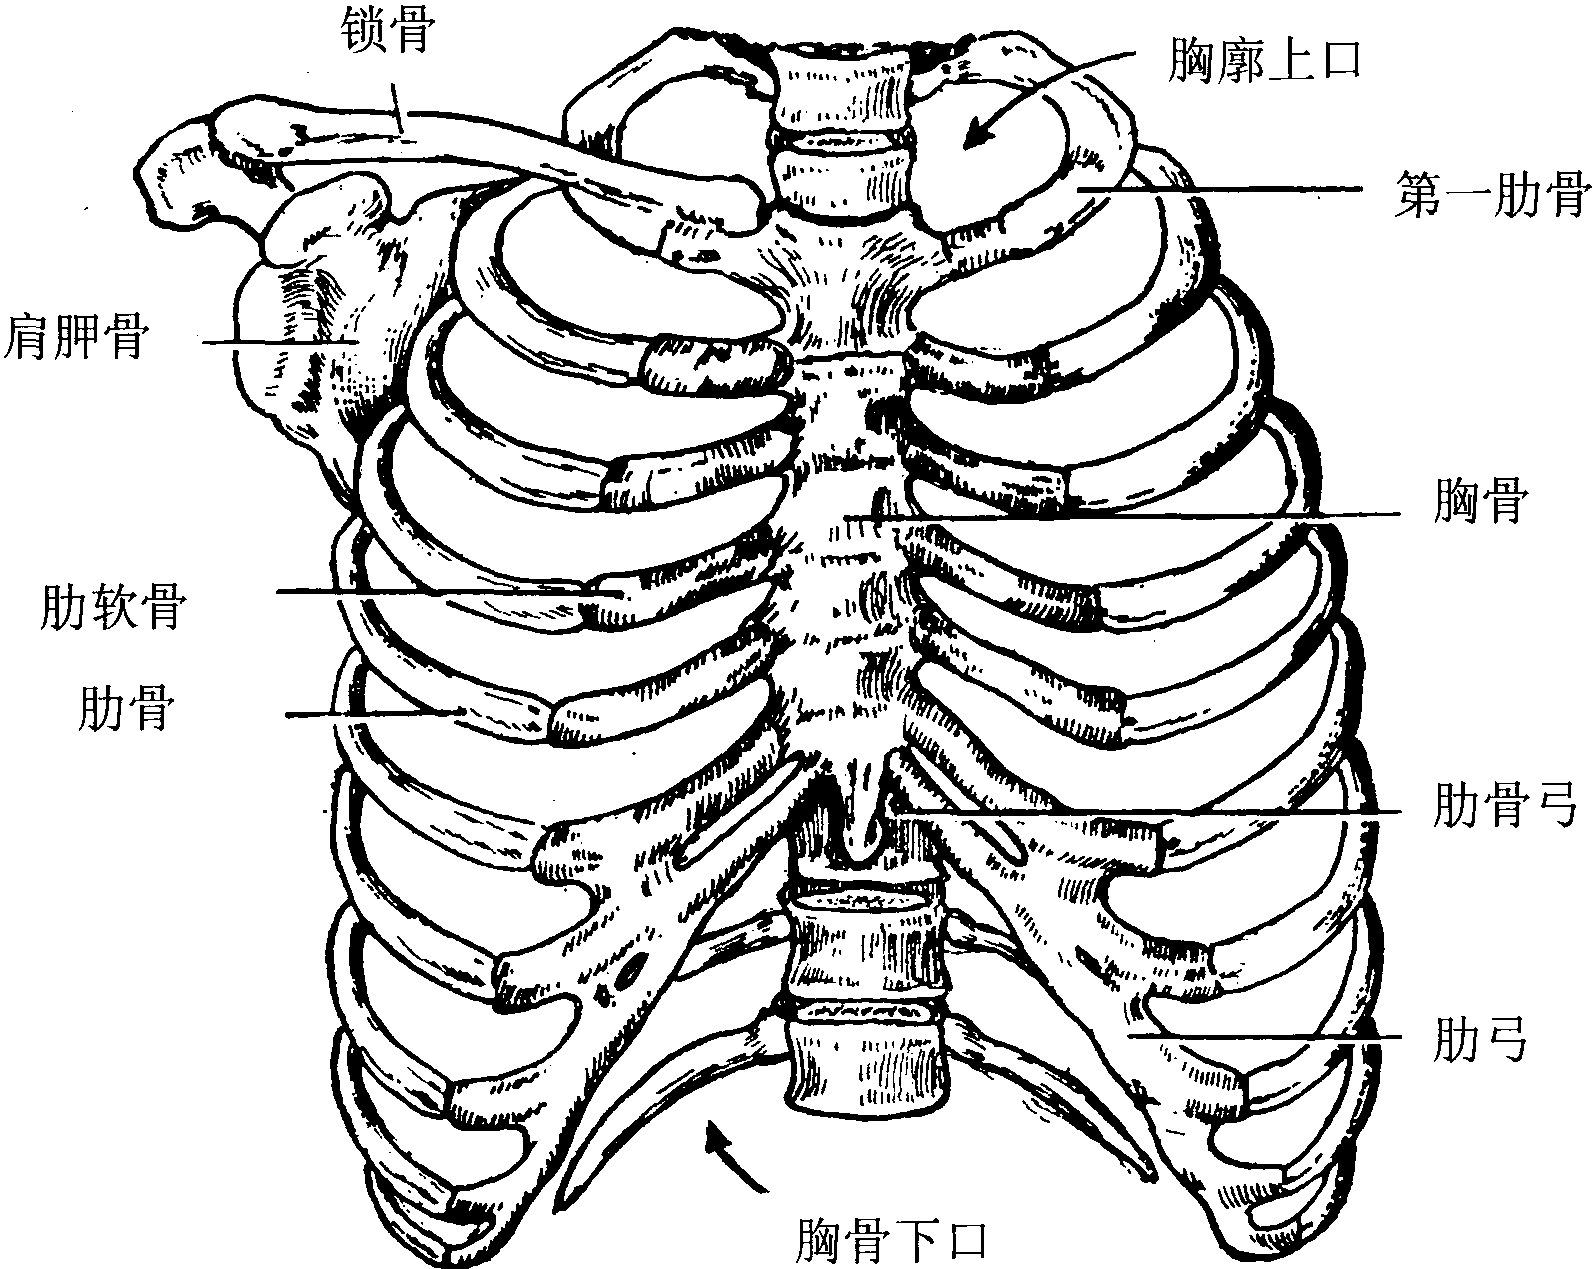 胸廓是由肋骨,胸骨,锁骨,胸椎,肩胛骨共同围绕组成